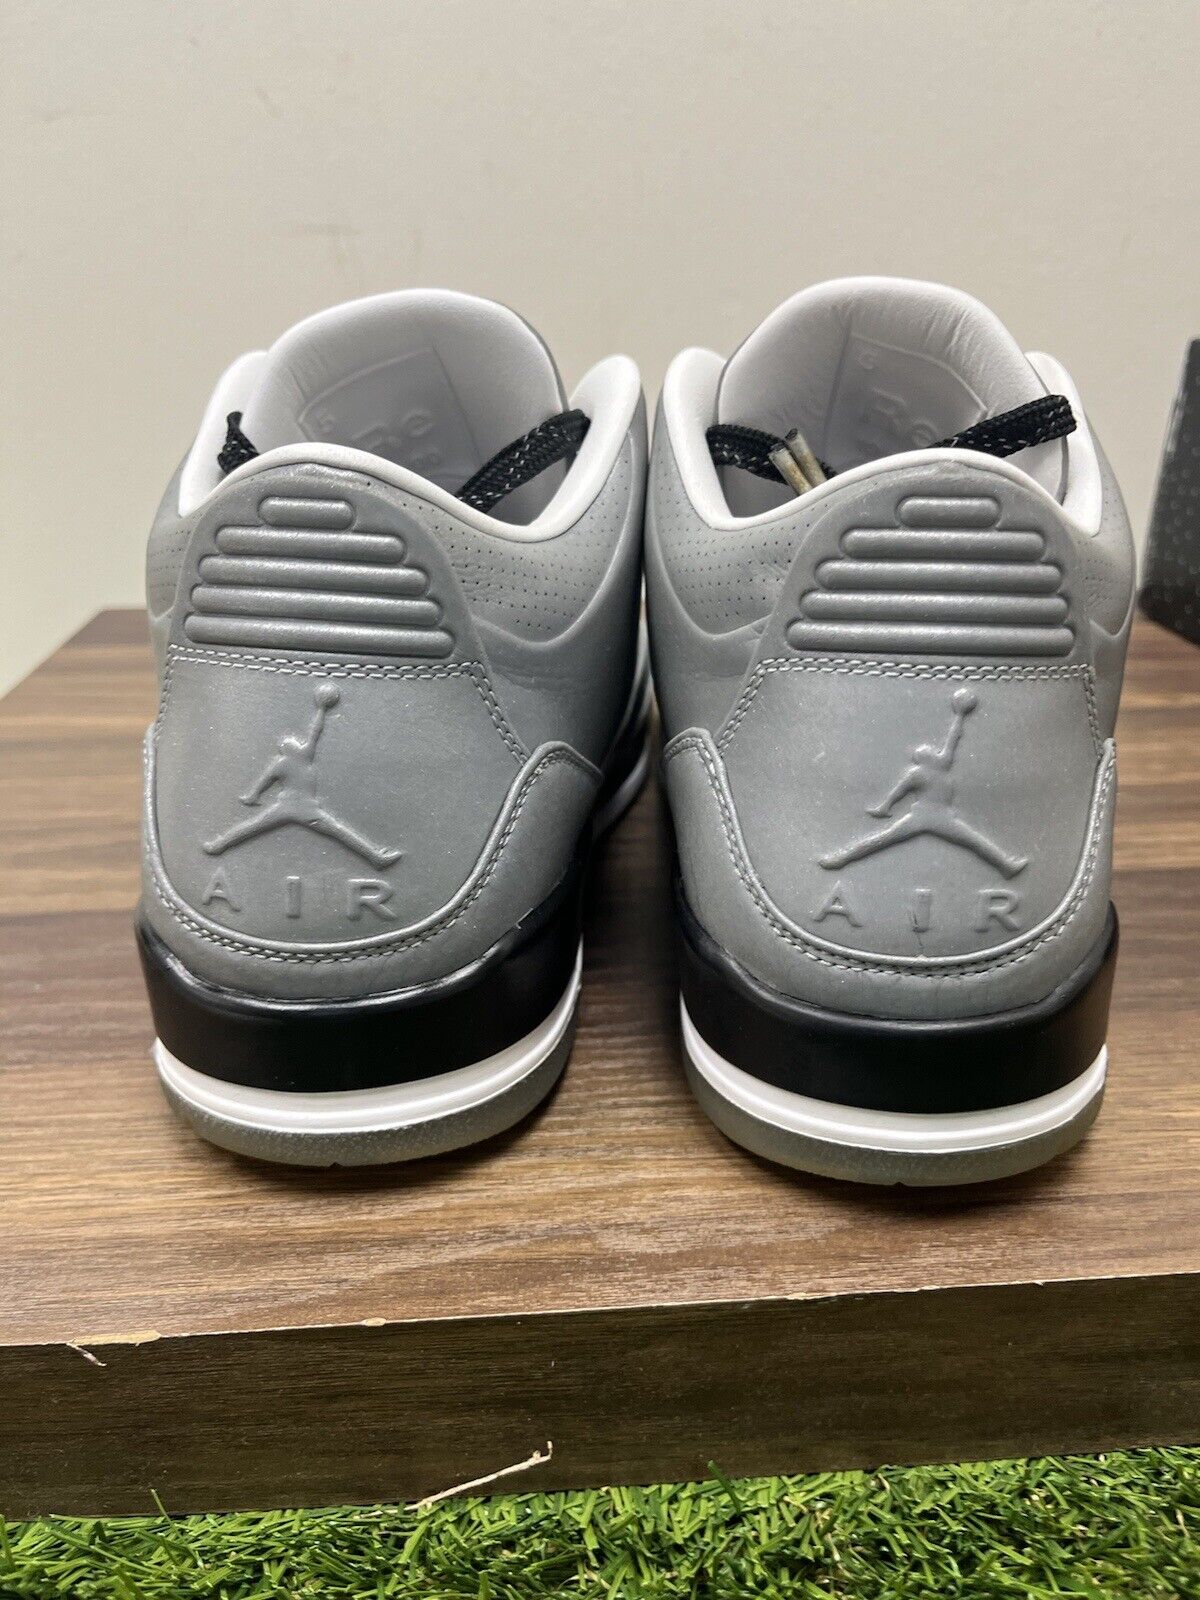 Size 10.5 - Jordan 3 5Lab3 Reflective Silver 2014